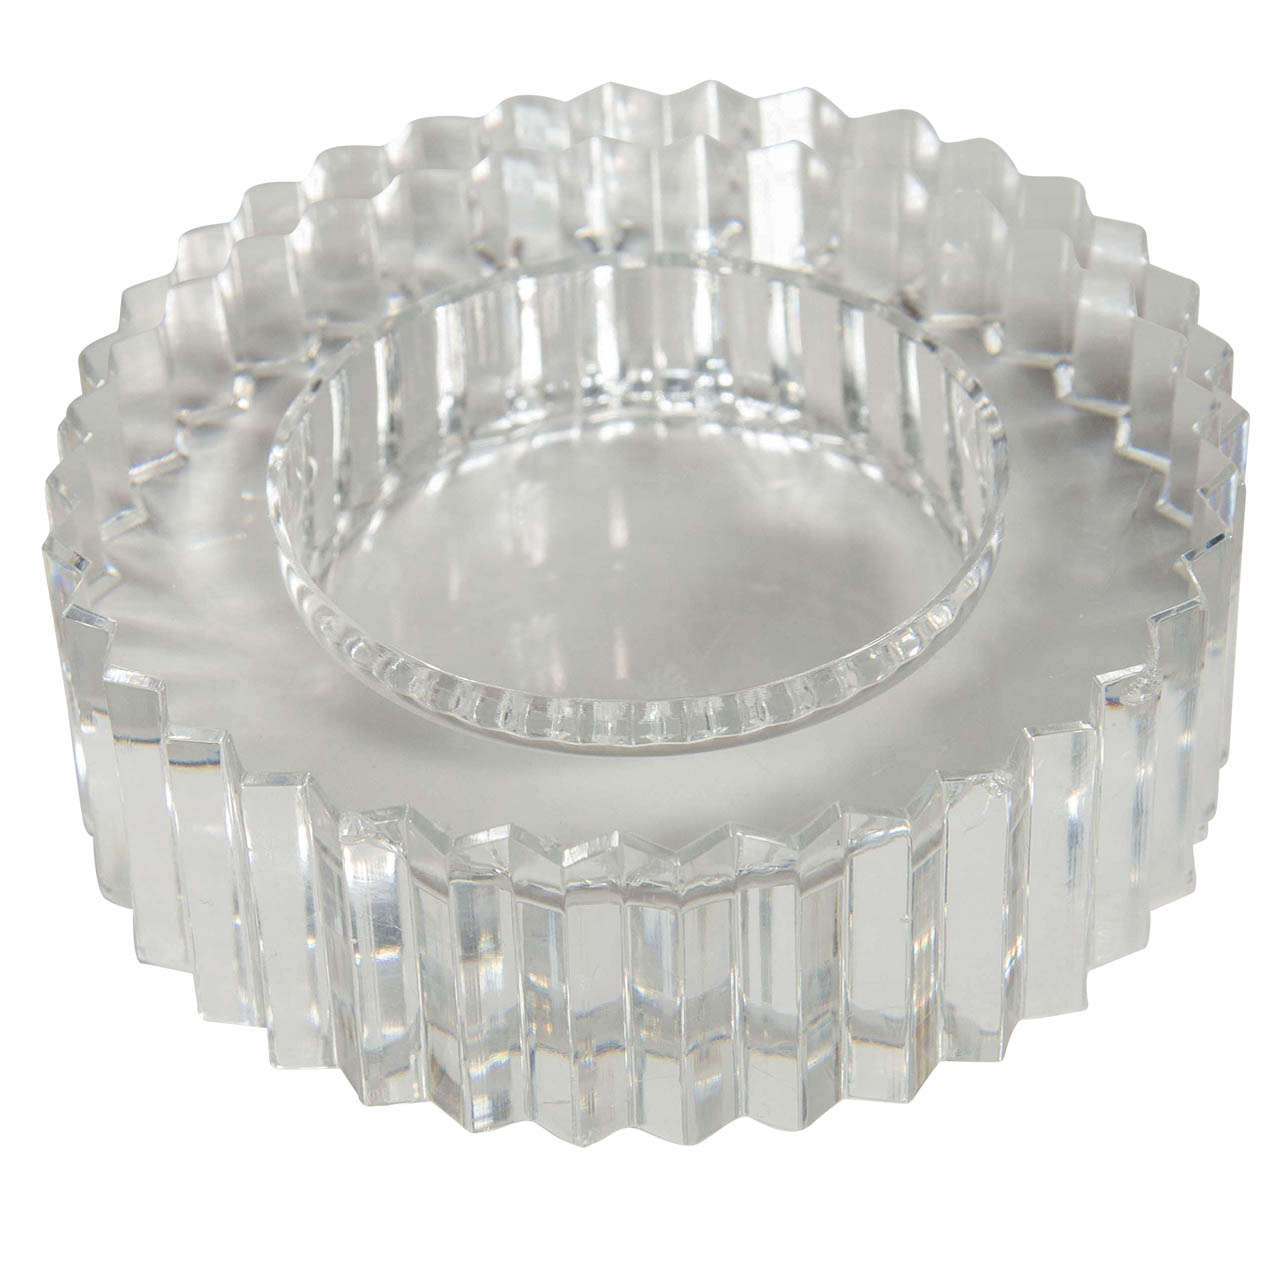 Fine Cut Crystal Gear Wheel Tray/Dish by Rosenthal